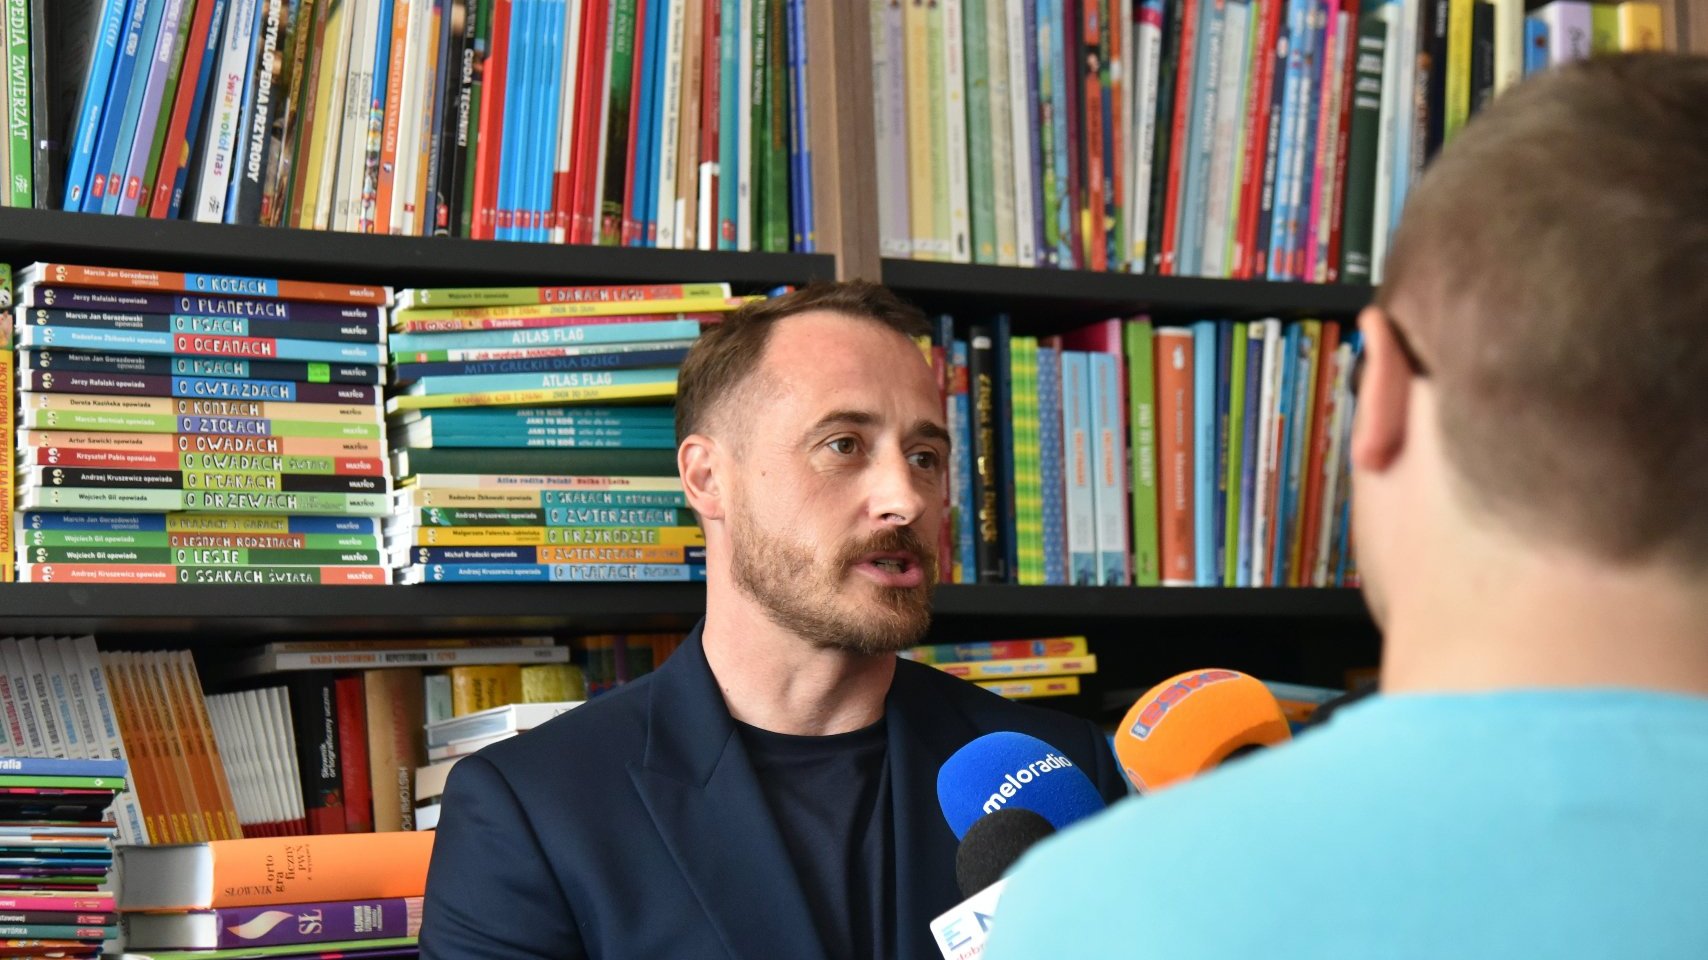 Zdjęcie przedstawia mężczyznę mówiącego do mikrofonu. Za jego plecami znajduje się półka z książkami.